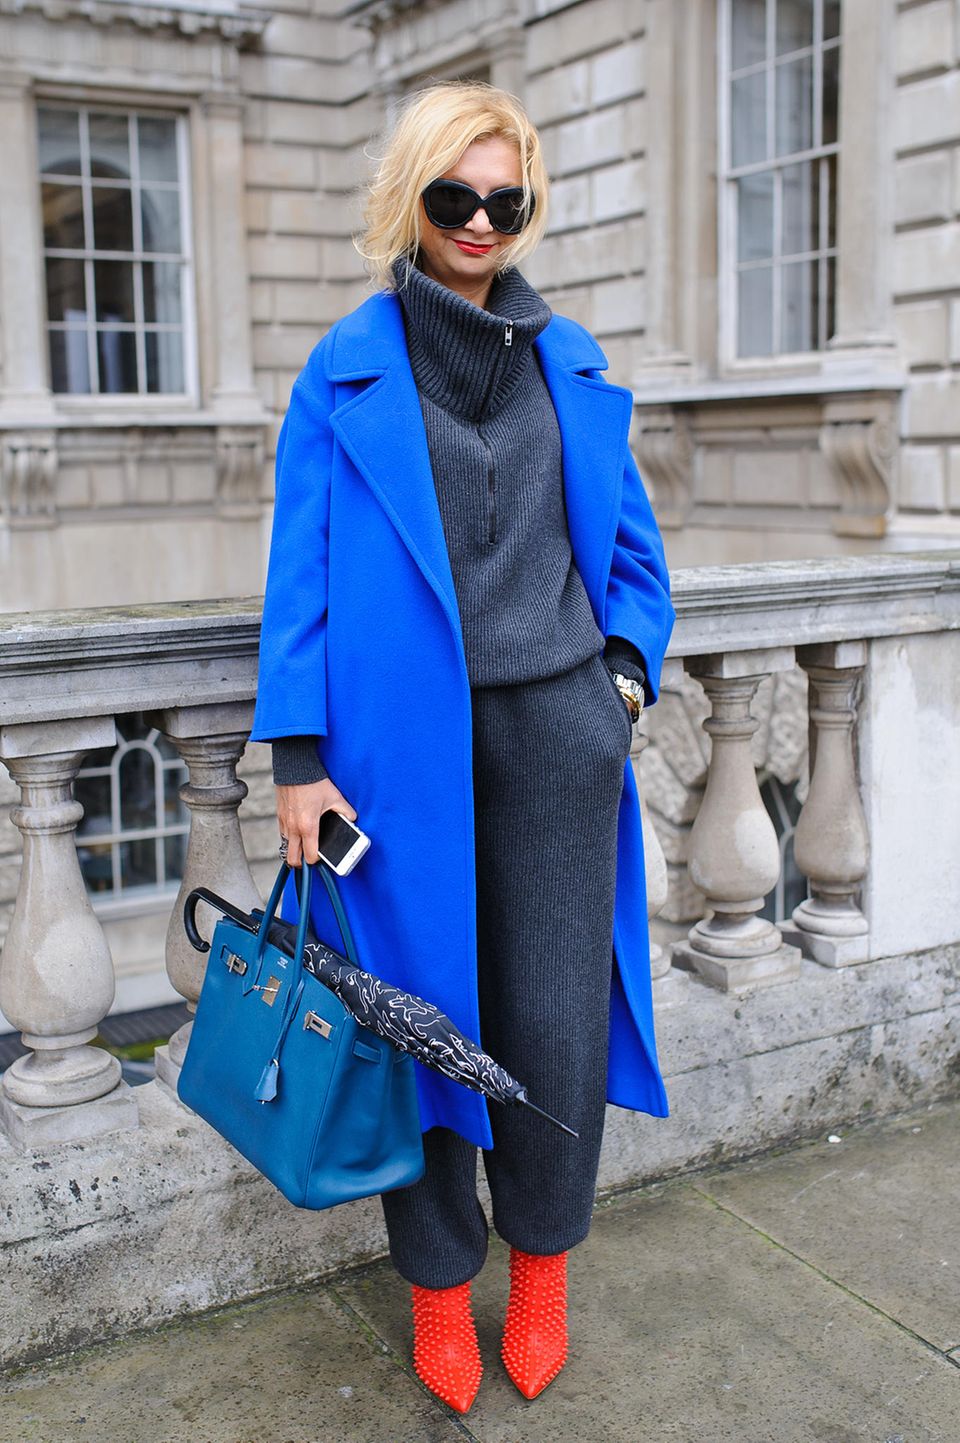 Bloggerin trägt royalblauen Mantel zu roten Schuhen